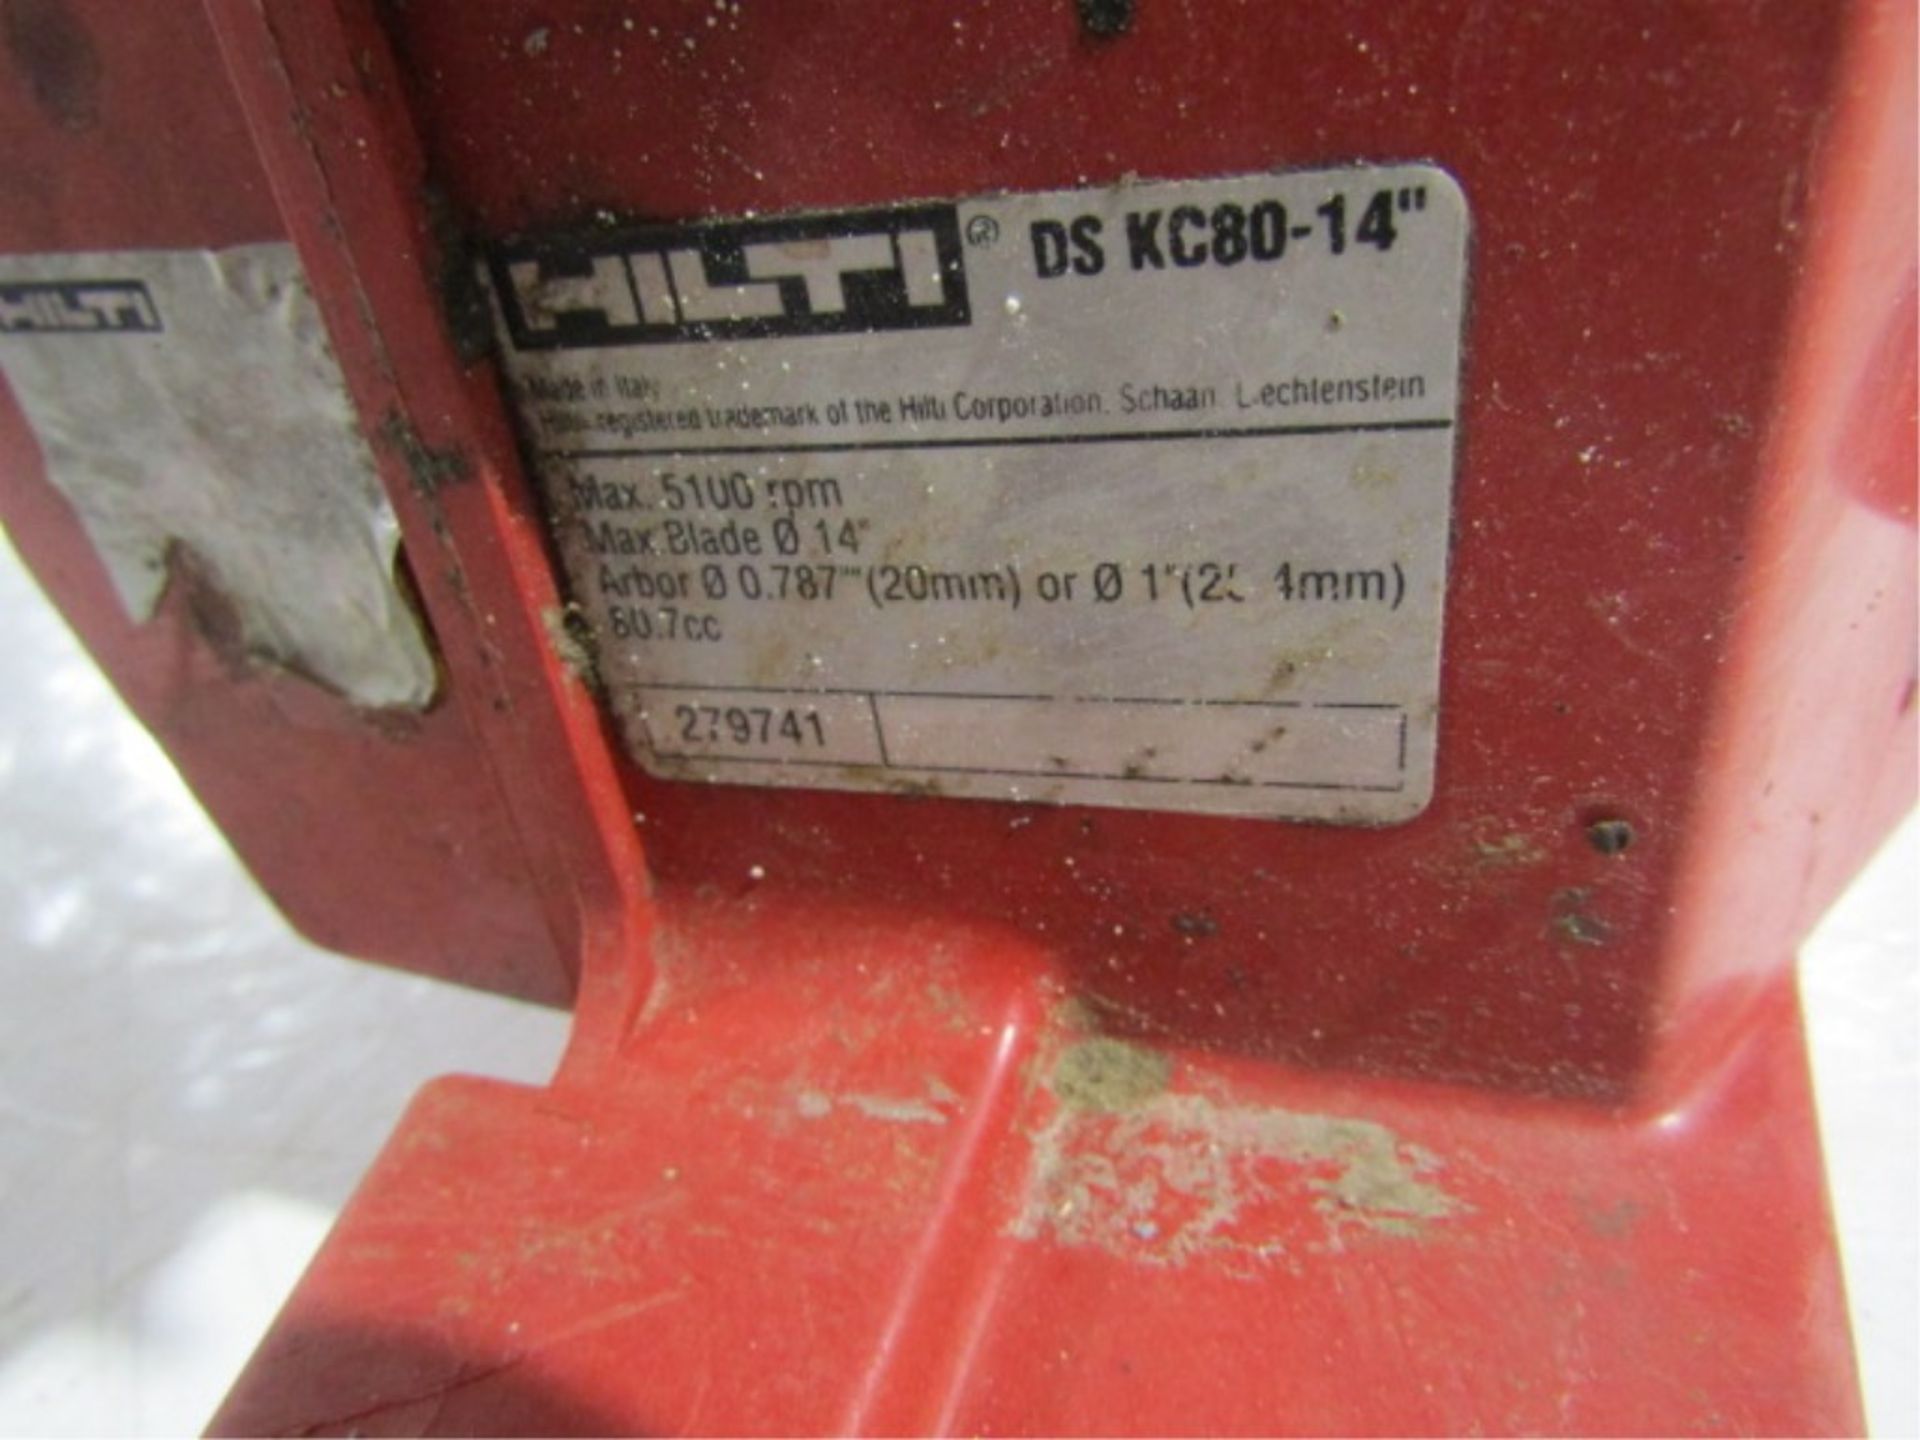 Hilti DS-KC80-14" Concrete Cut-Off, Serial 279741 - Image 2 of 3